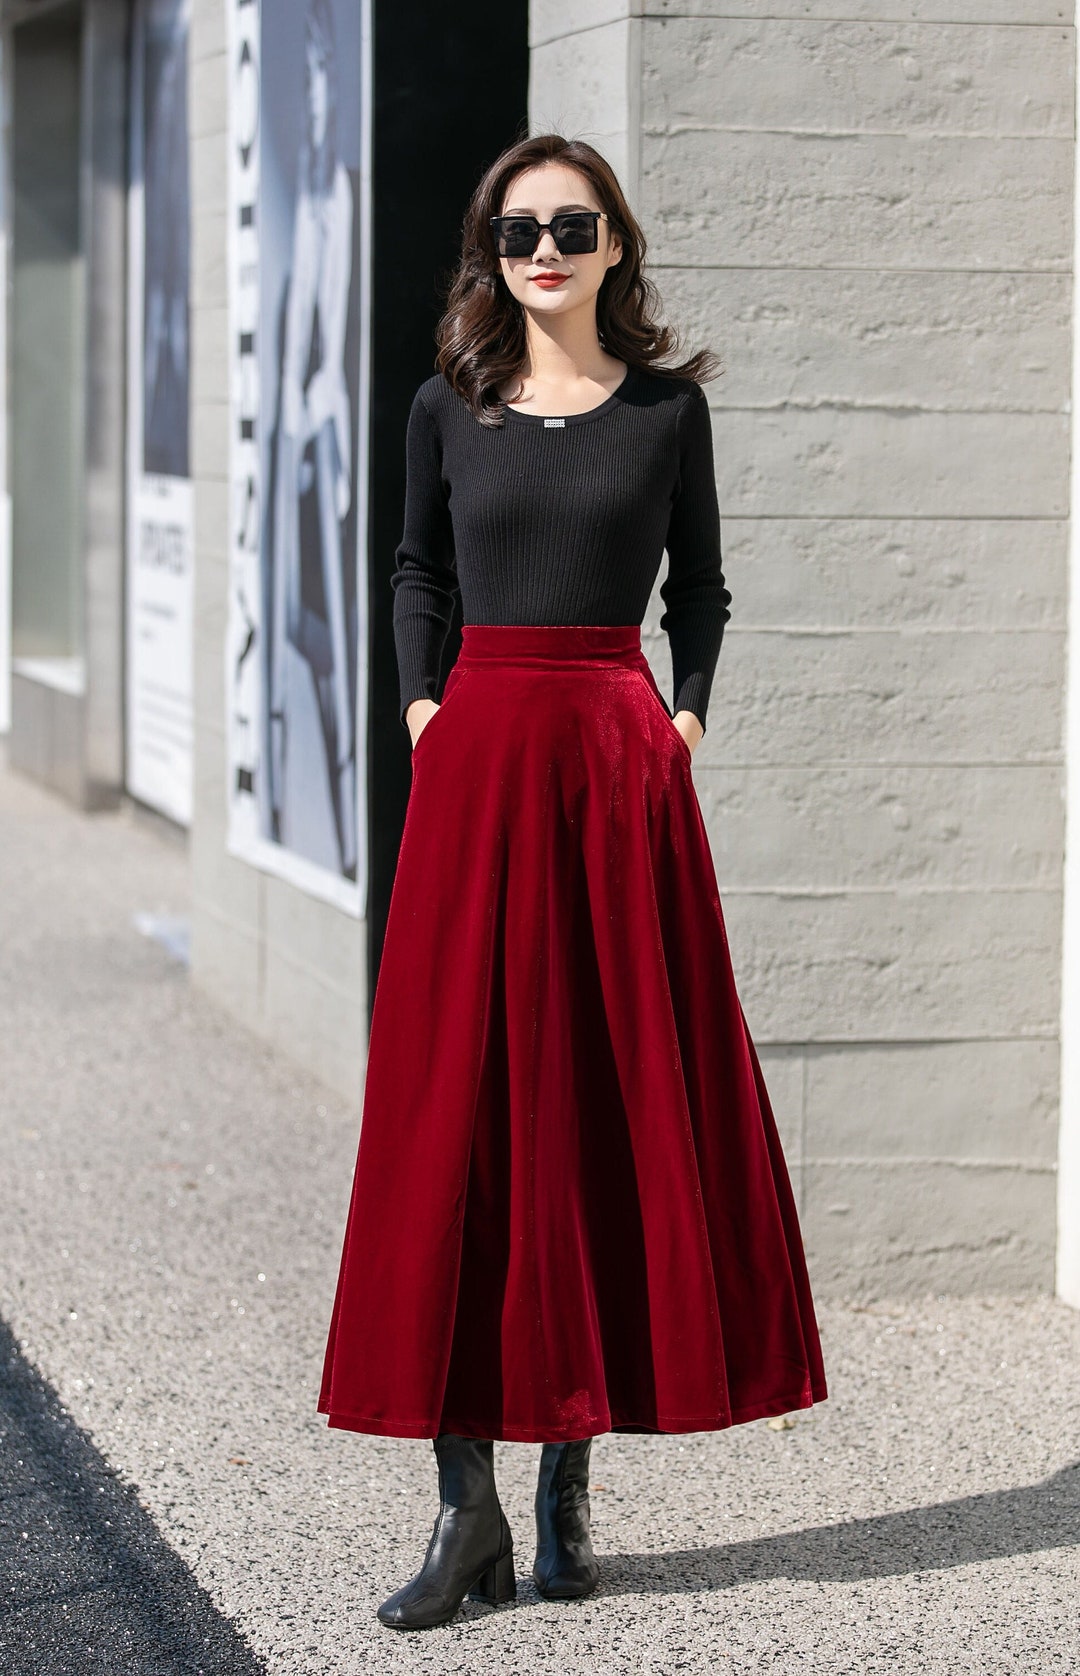 Red Long Velvet Skirt High Waisted Skirt Swing Skirt A Line - Etsy